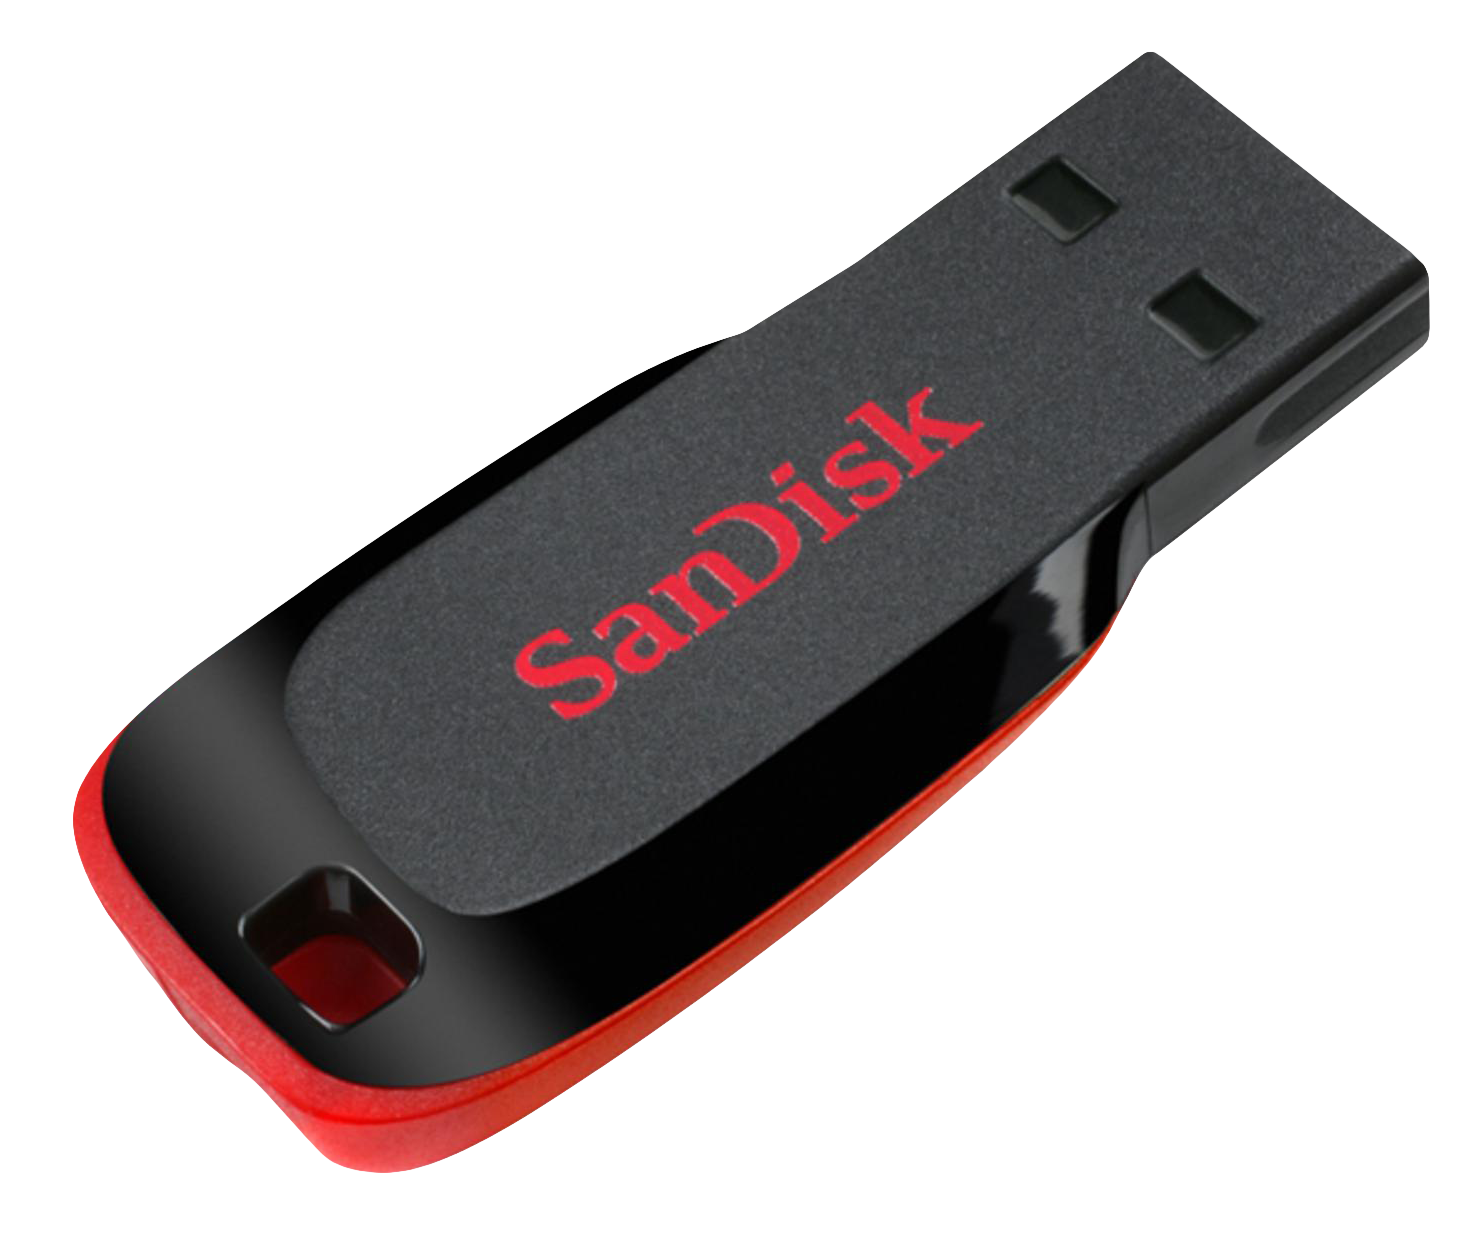 SanDisk USB Flash Pen Drive PNG Image.